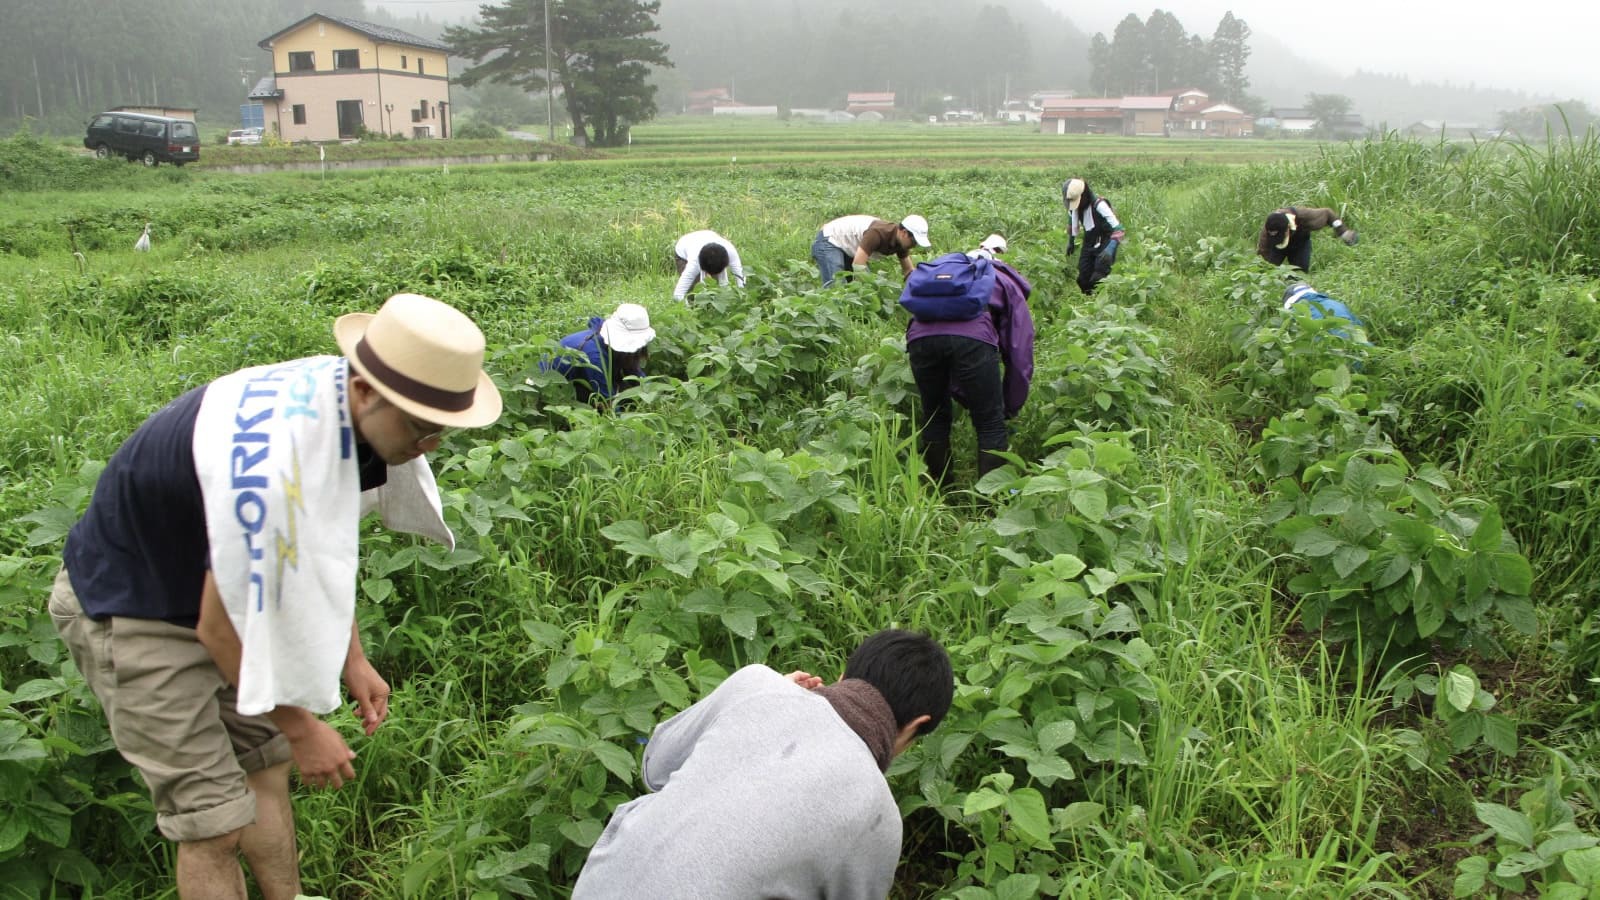 夏_農業体験旅館大沼では、無農薬で大豆を育てており、農業体験もできます